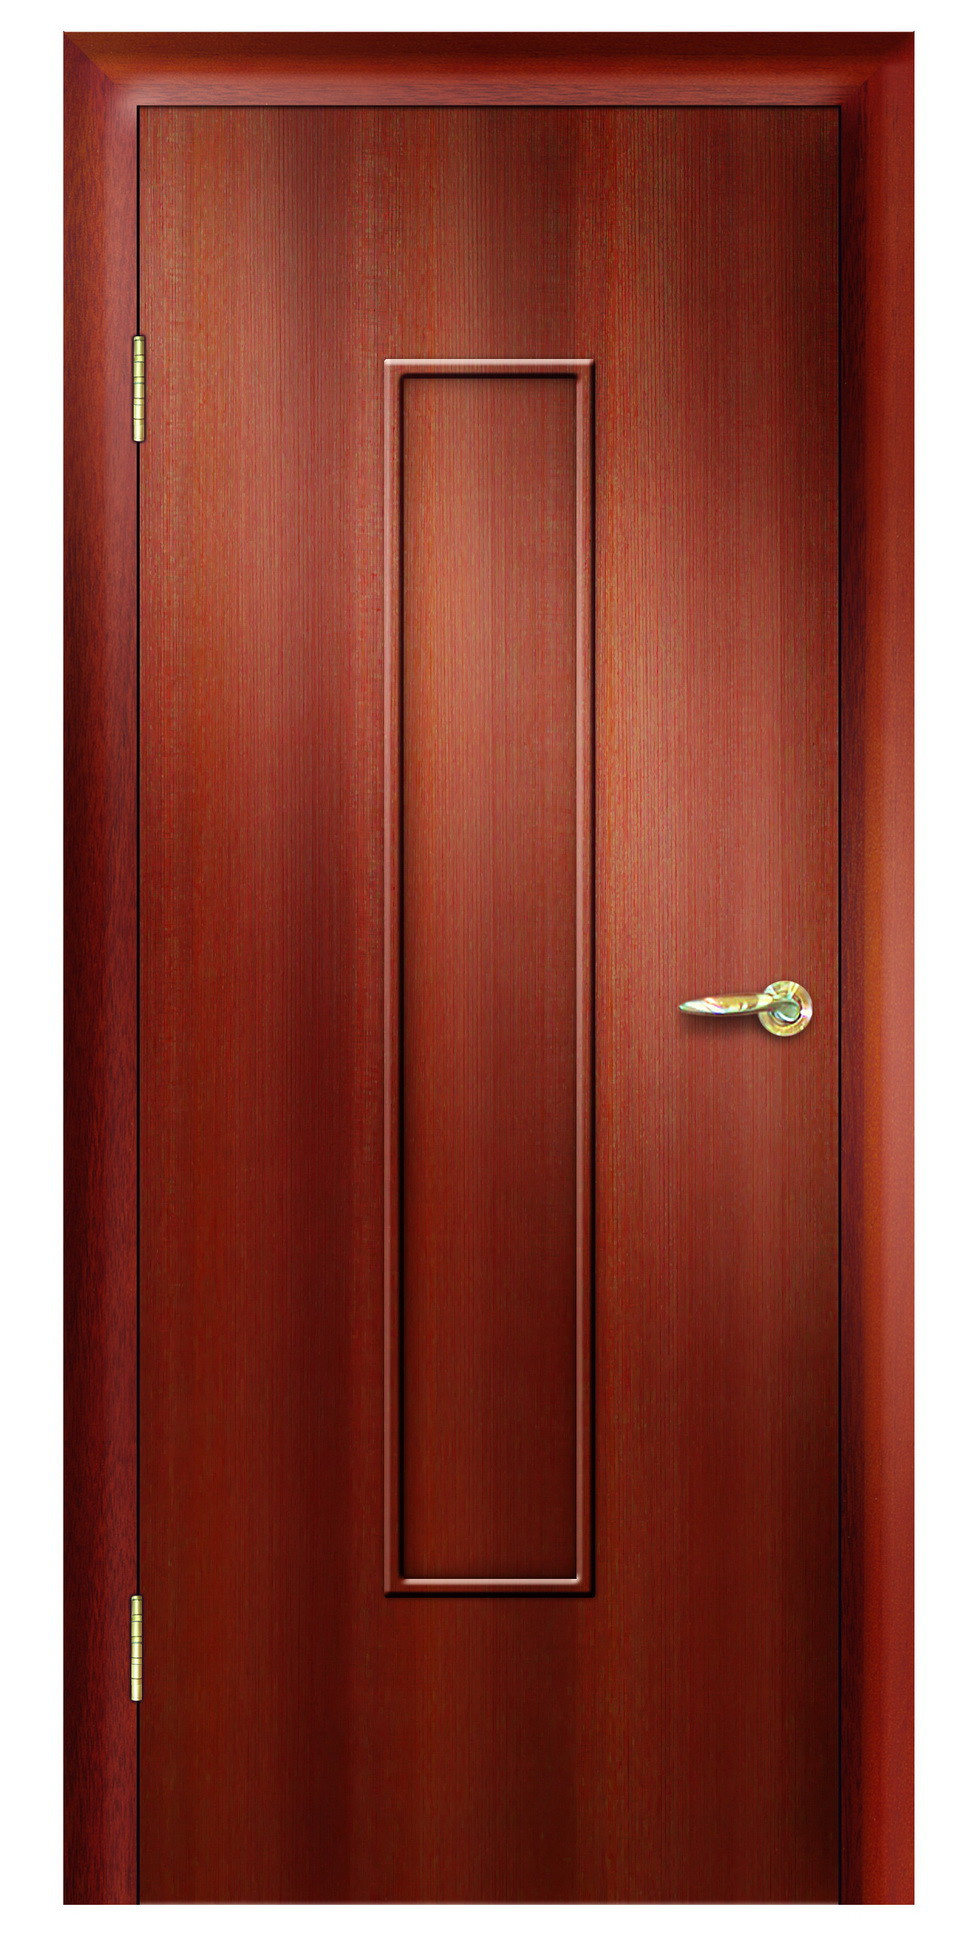 Дверная Линия Межкомнатная дверь ПГ-101, арт. 15727 - фото №1